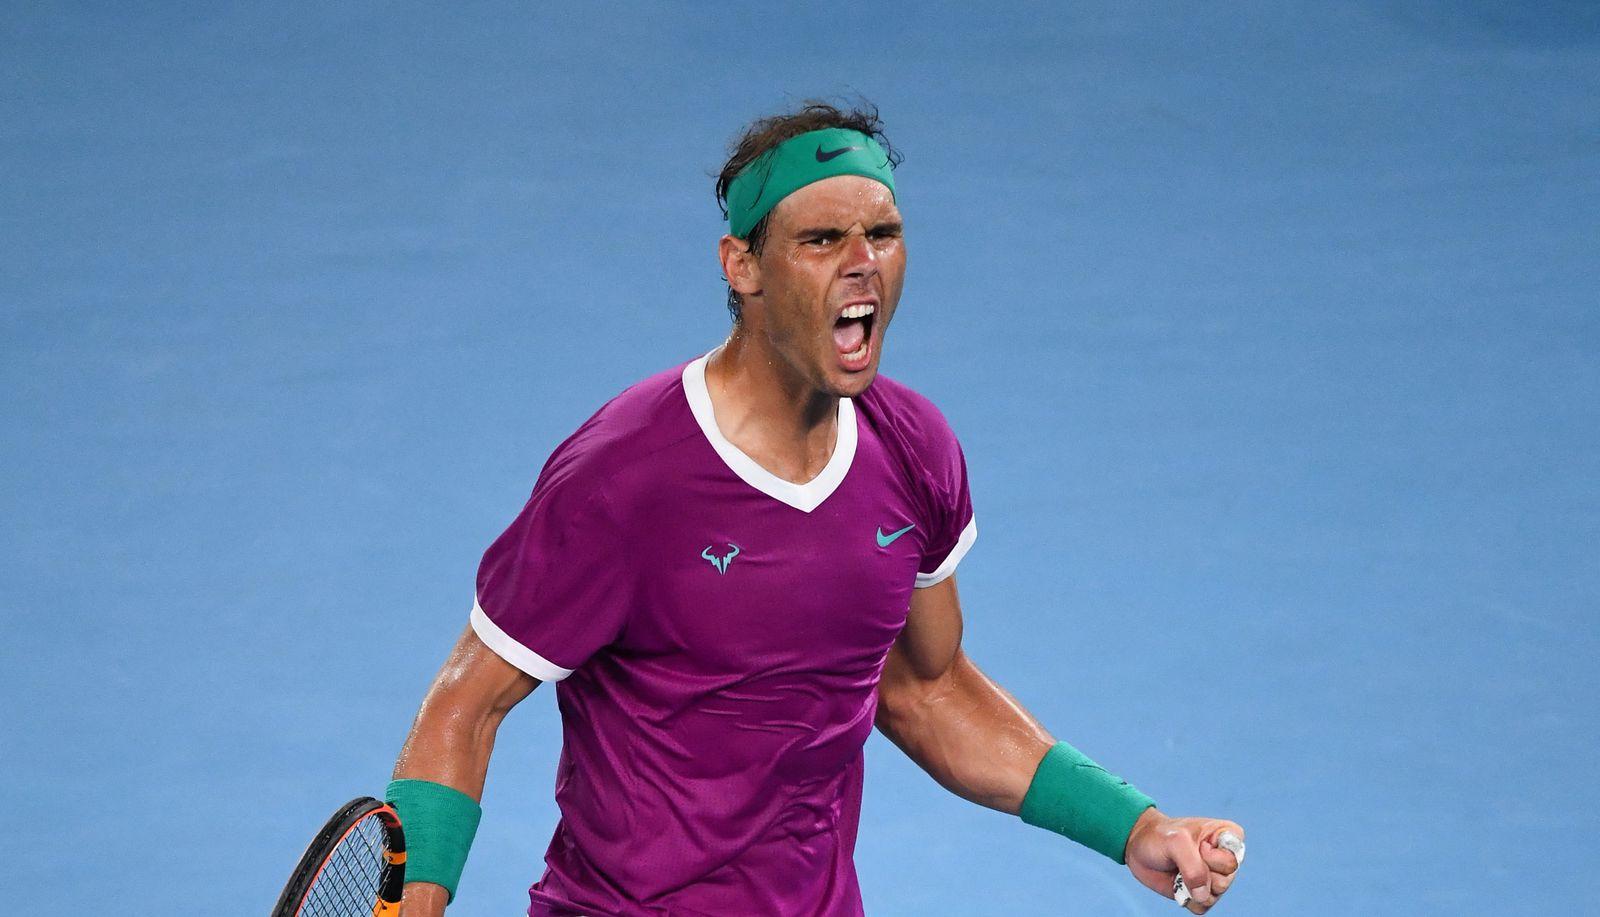 Neuništivi Nadal ispisao historiju titulom, sad ide po Novakov rekord